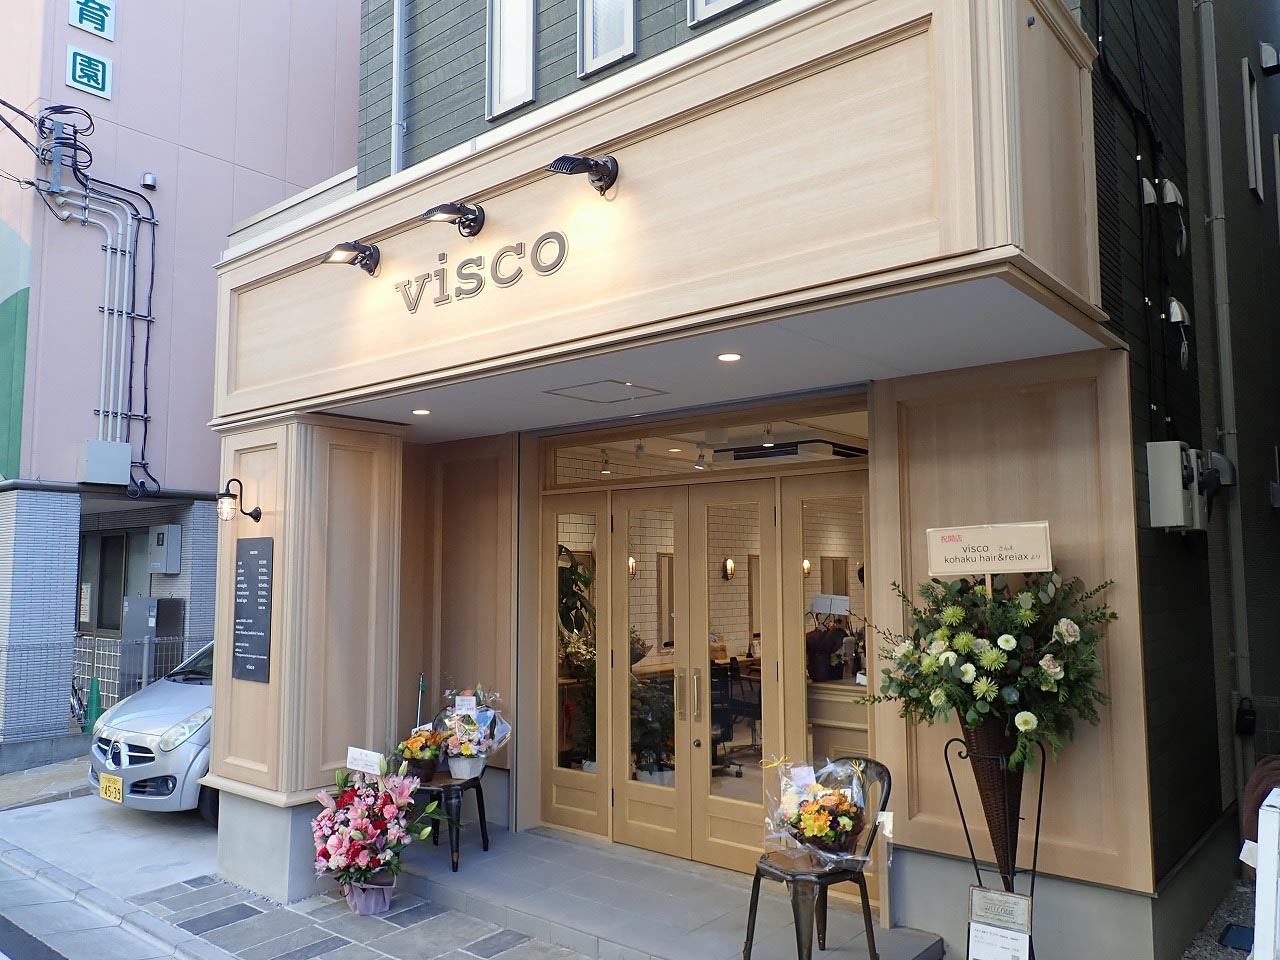 2021年12月にオープンの美容院『visco』